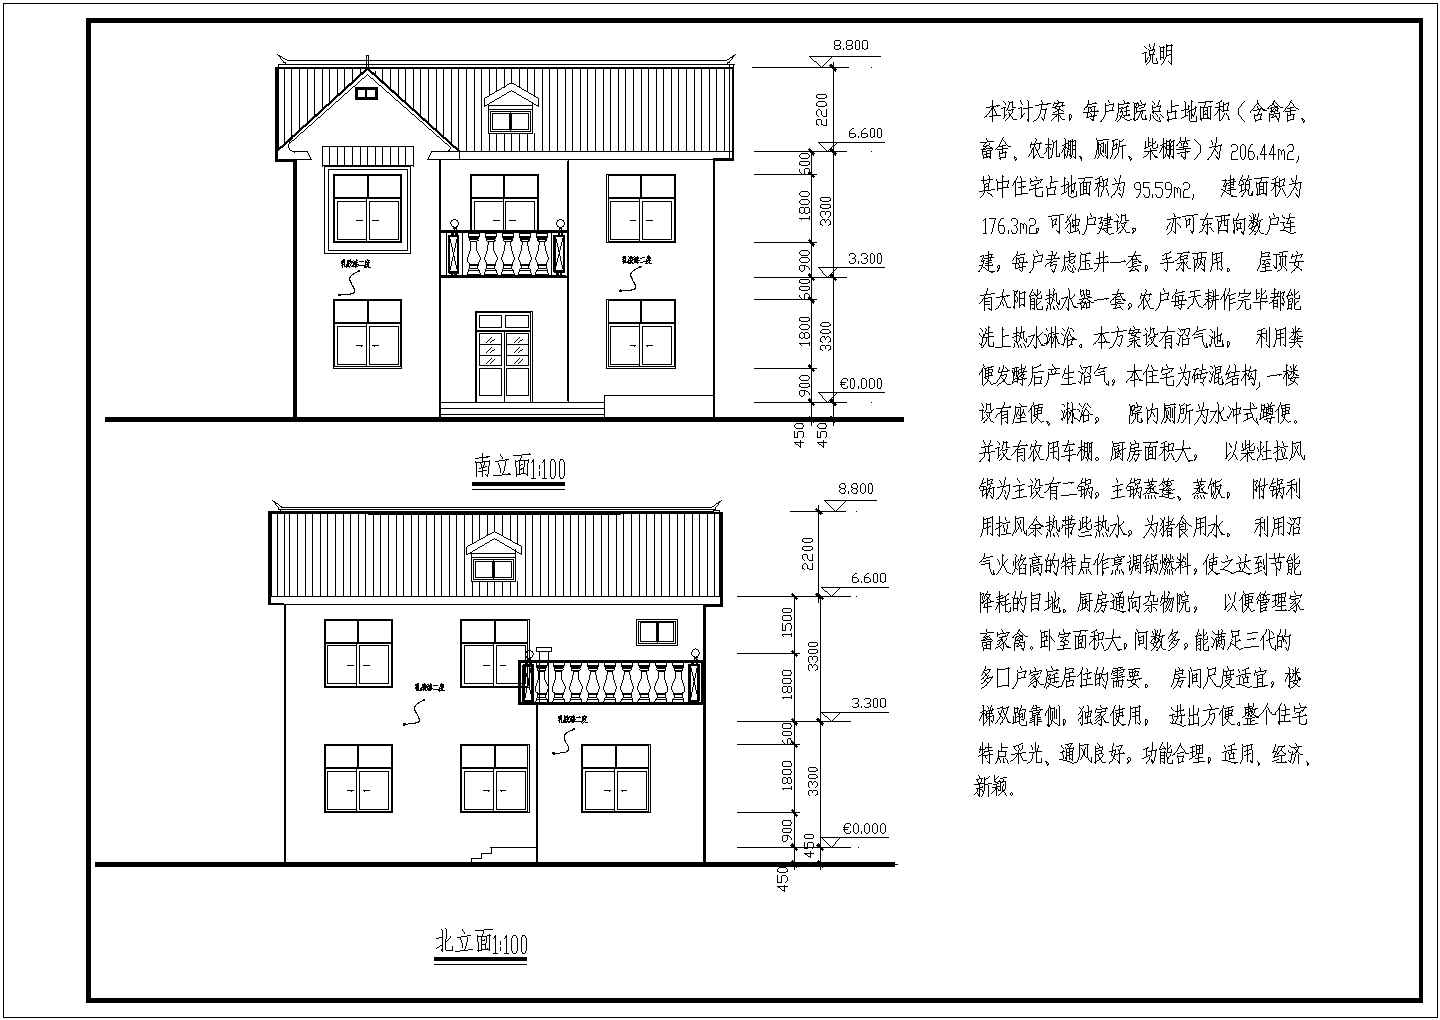 一套简单实用独栋新农村住宅小楼施工设计图